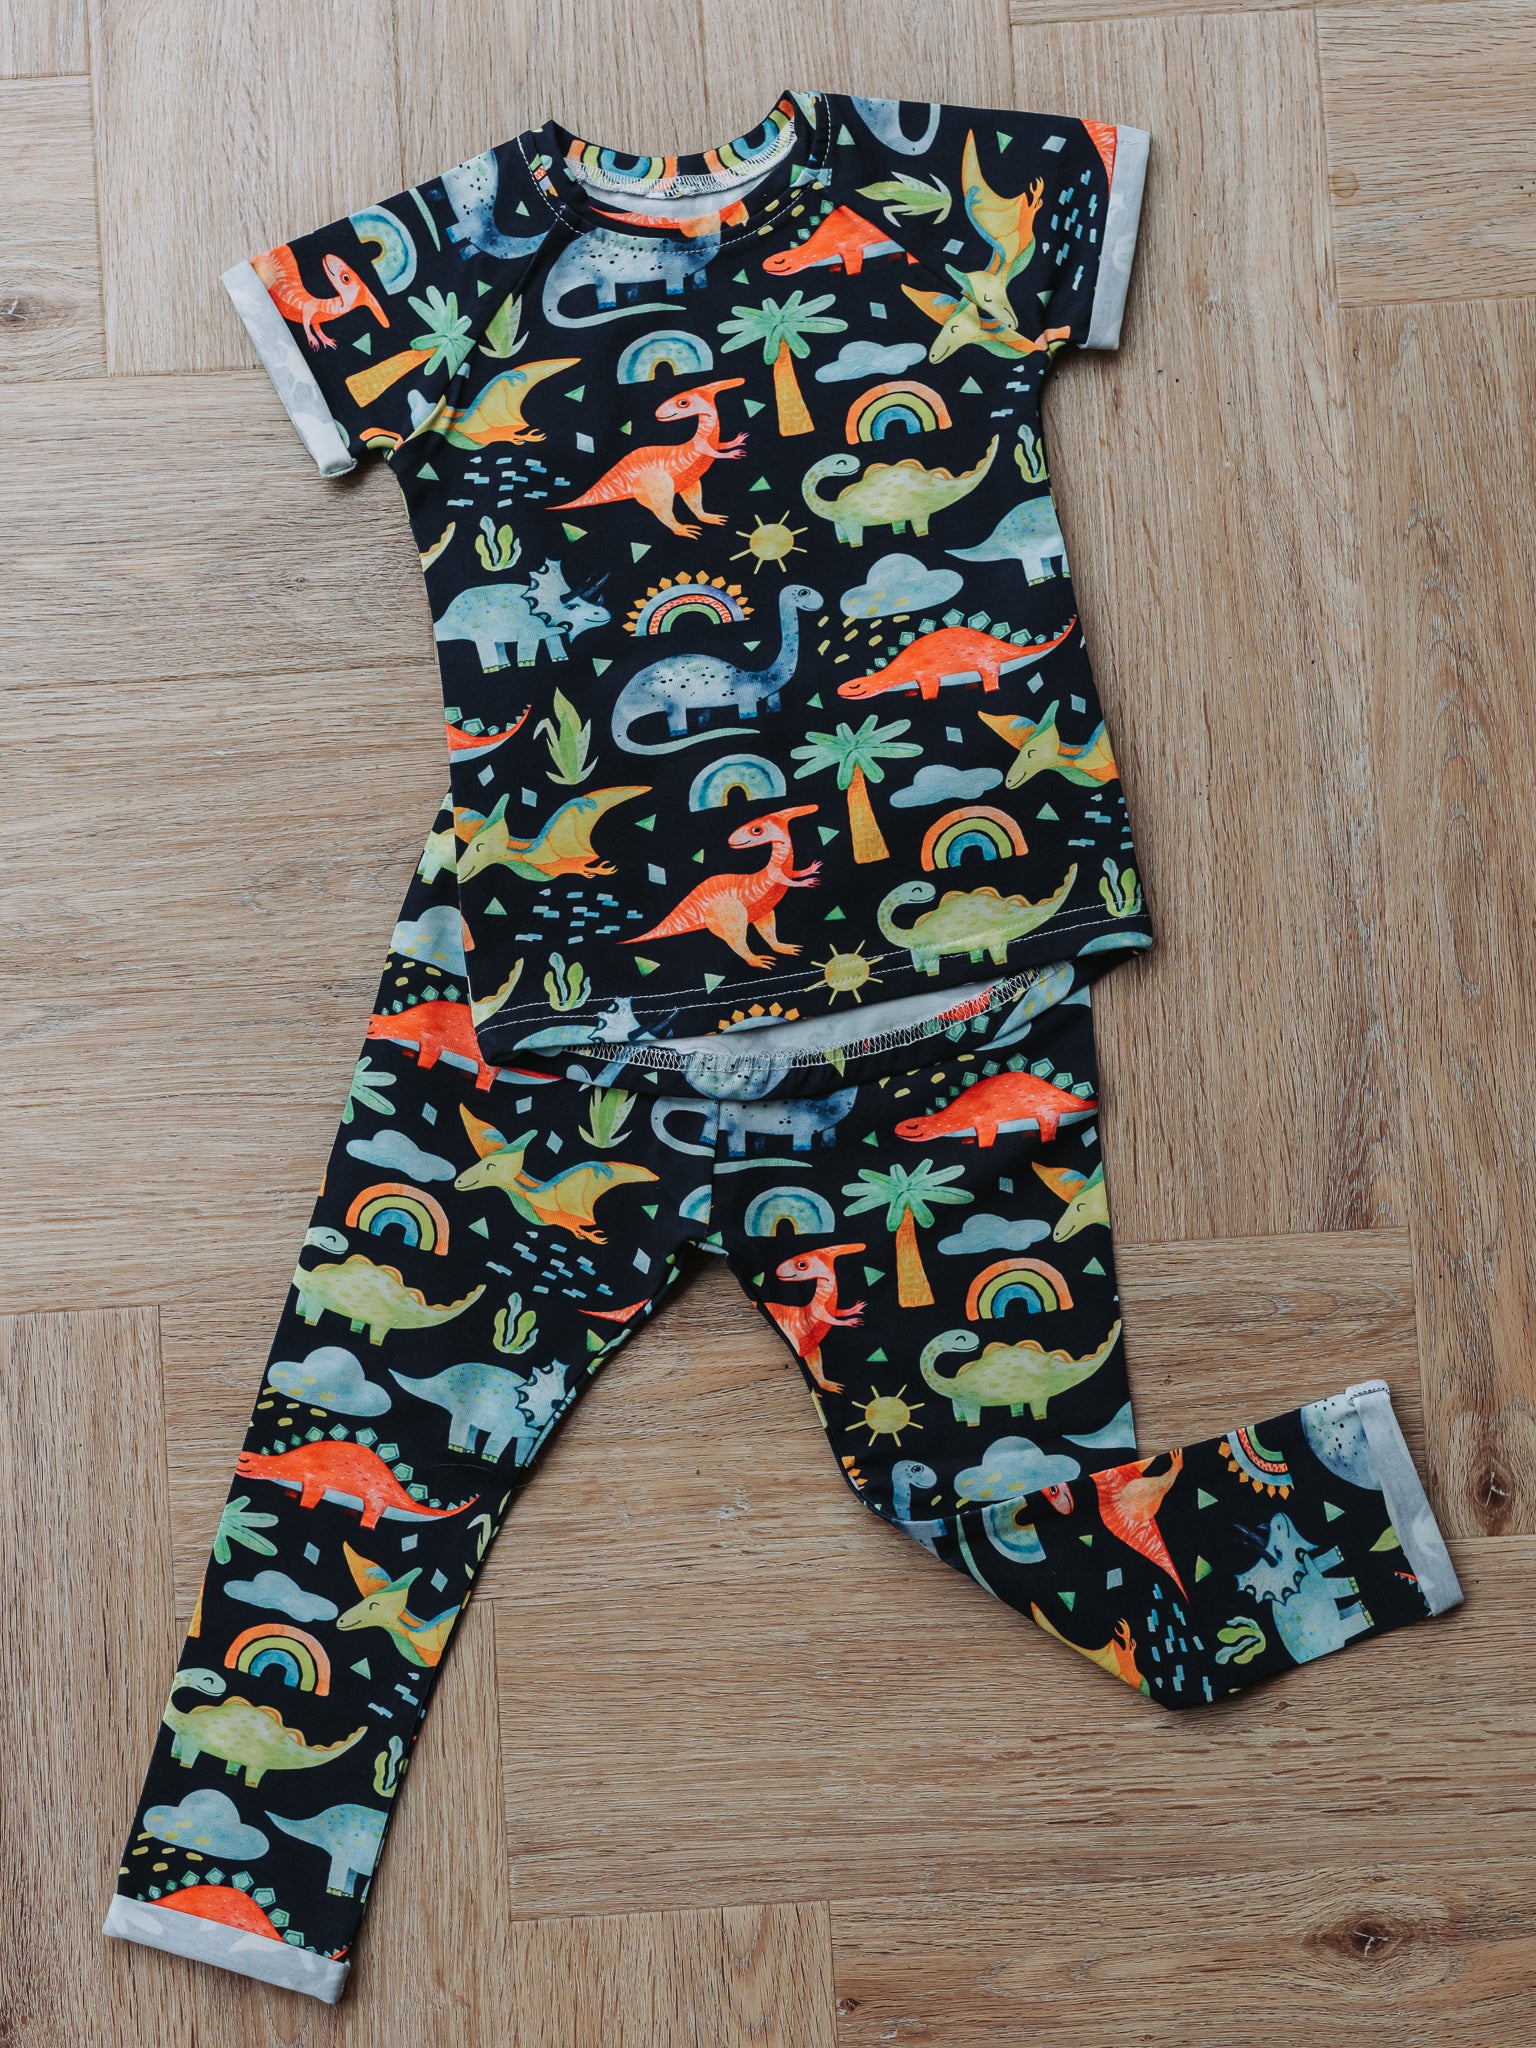 Rainbow Dinosaur Outfit Bundle